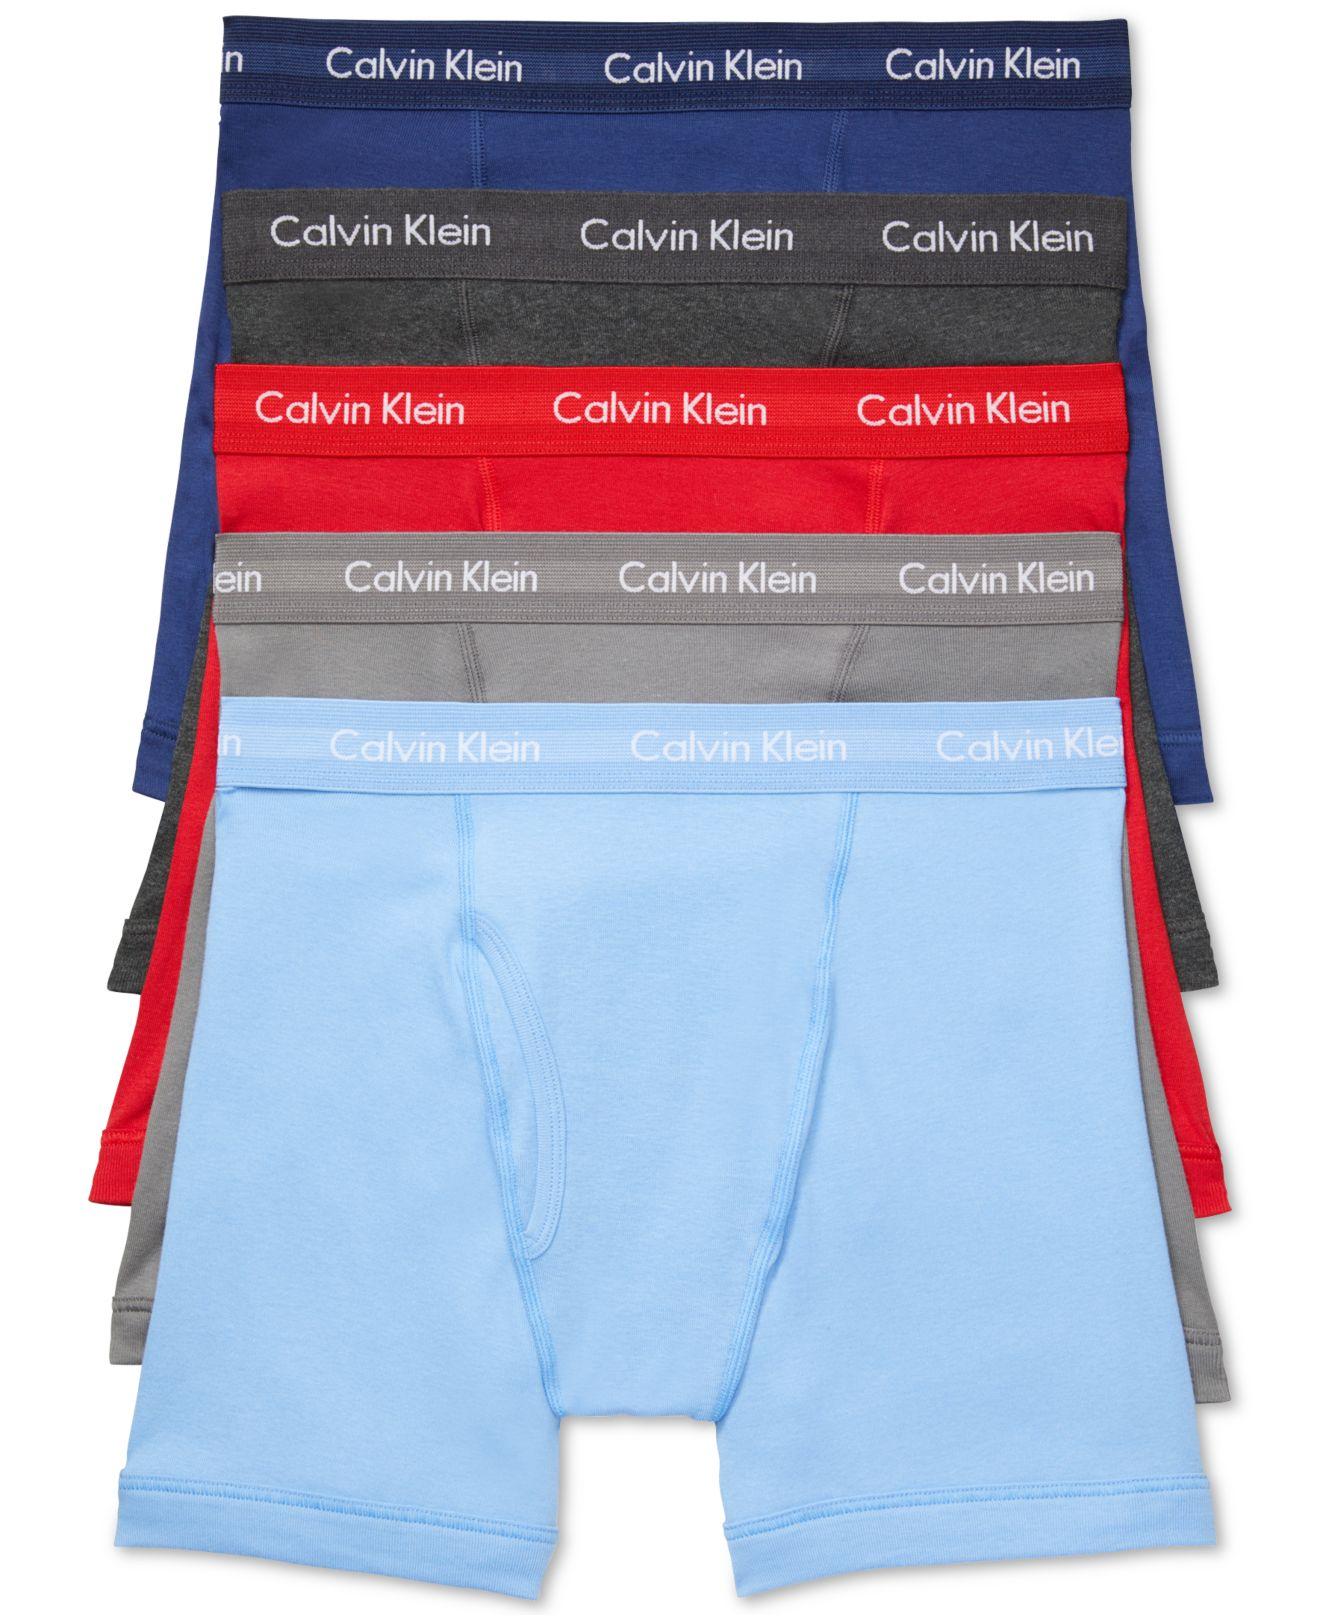 calvin klein boxer briefs or trunks